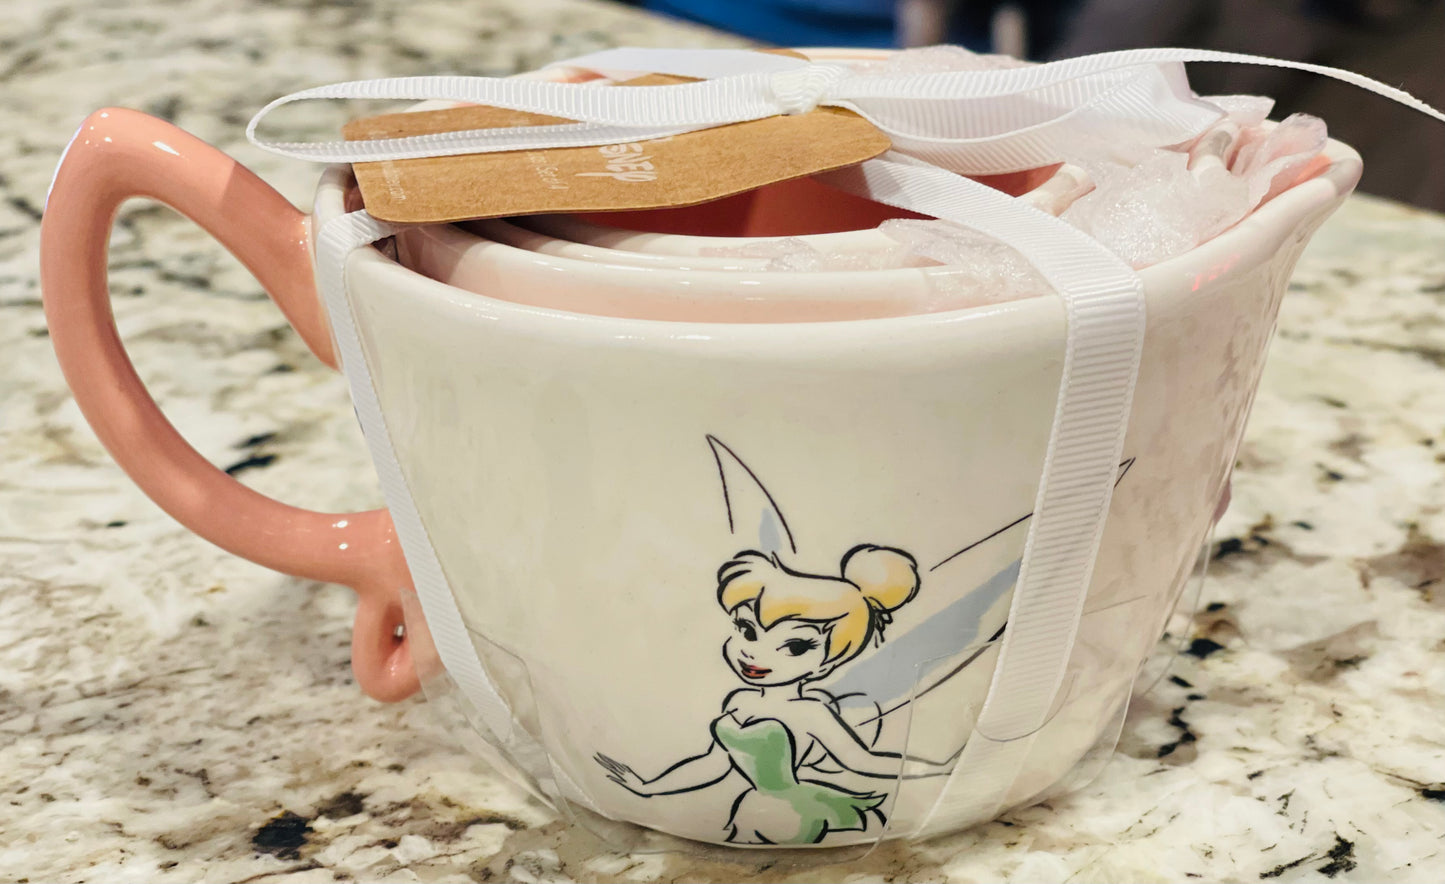 New Rae Dunn x Peter Pan white ceramic Disney Tinker Bell